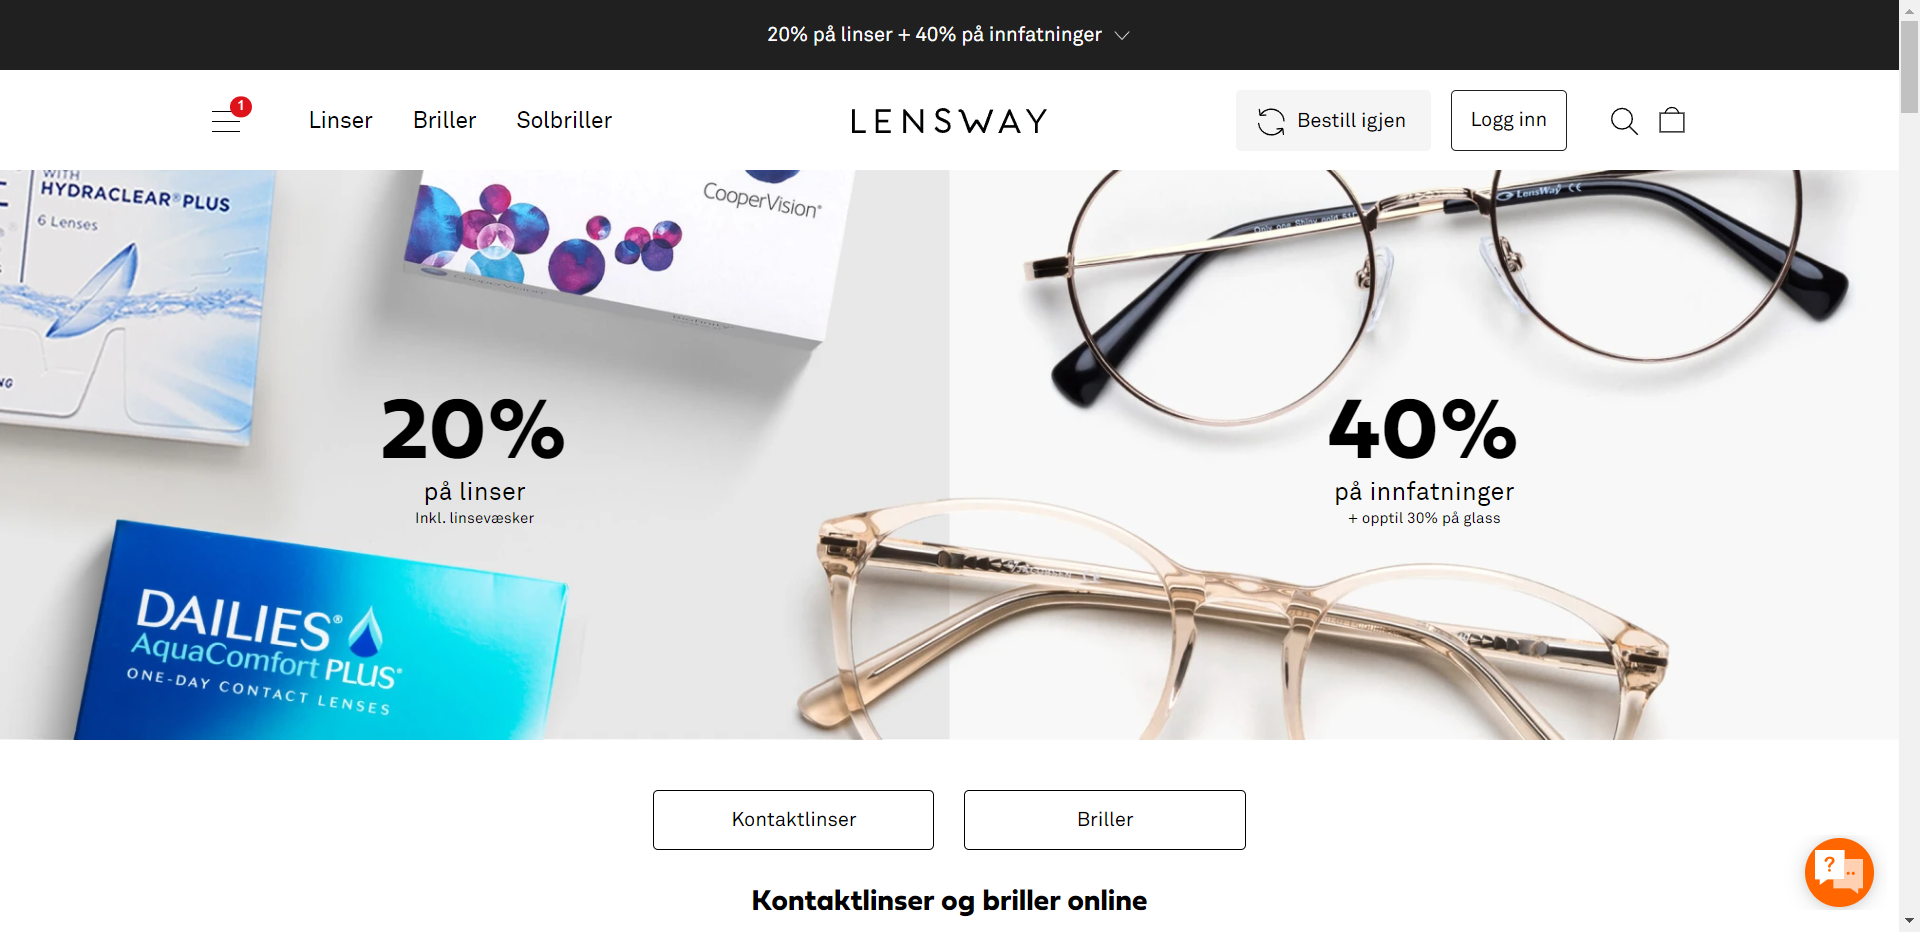 Lensway nettbutikk - Les omtalen av nettbutikken